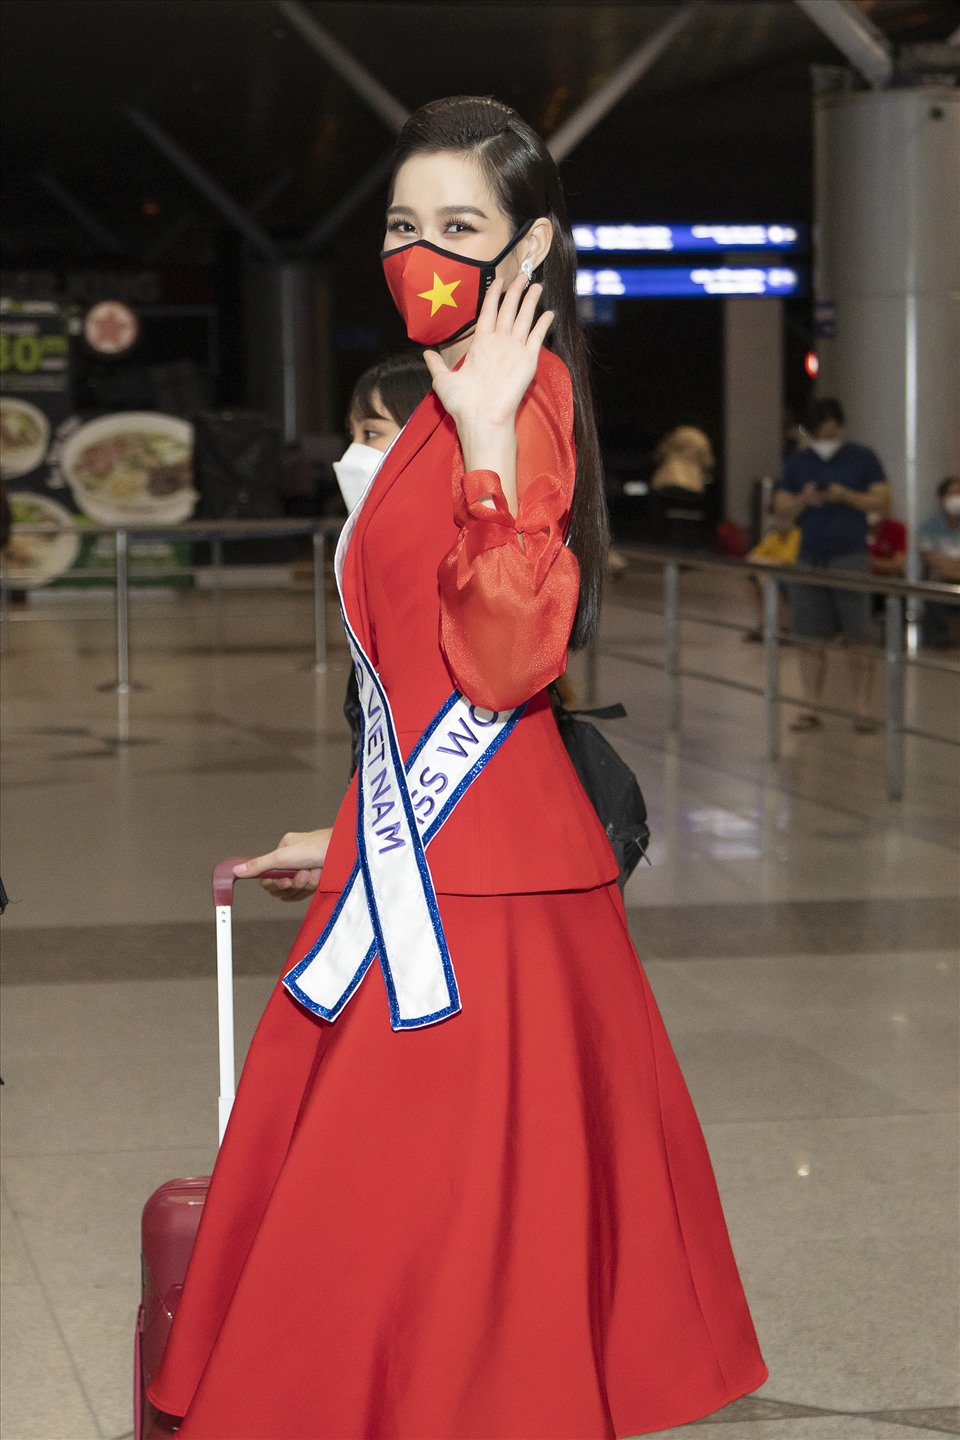 Sau thời gian dài không thể tổ chức vì diễn biến phức tạp của dịch bệnh, Miss World 2021 hiện đã xác nhận được tổ chức ở San Juan, Puerto Rico đúng dịp kỷ niệm lần thứ 70 của cuộc thi. Bên cạnh đó, đương kim Miss World 2019 Toni Ann-Singh sẽ trao lại vương miện cho tân Hoa hậu vào đêm chung kết được diễn ra vào ngày 16/12/2021.